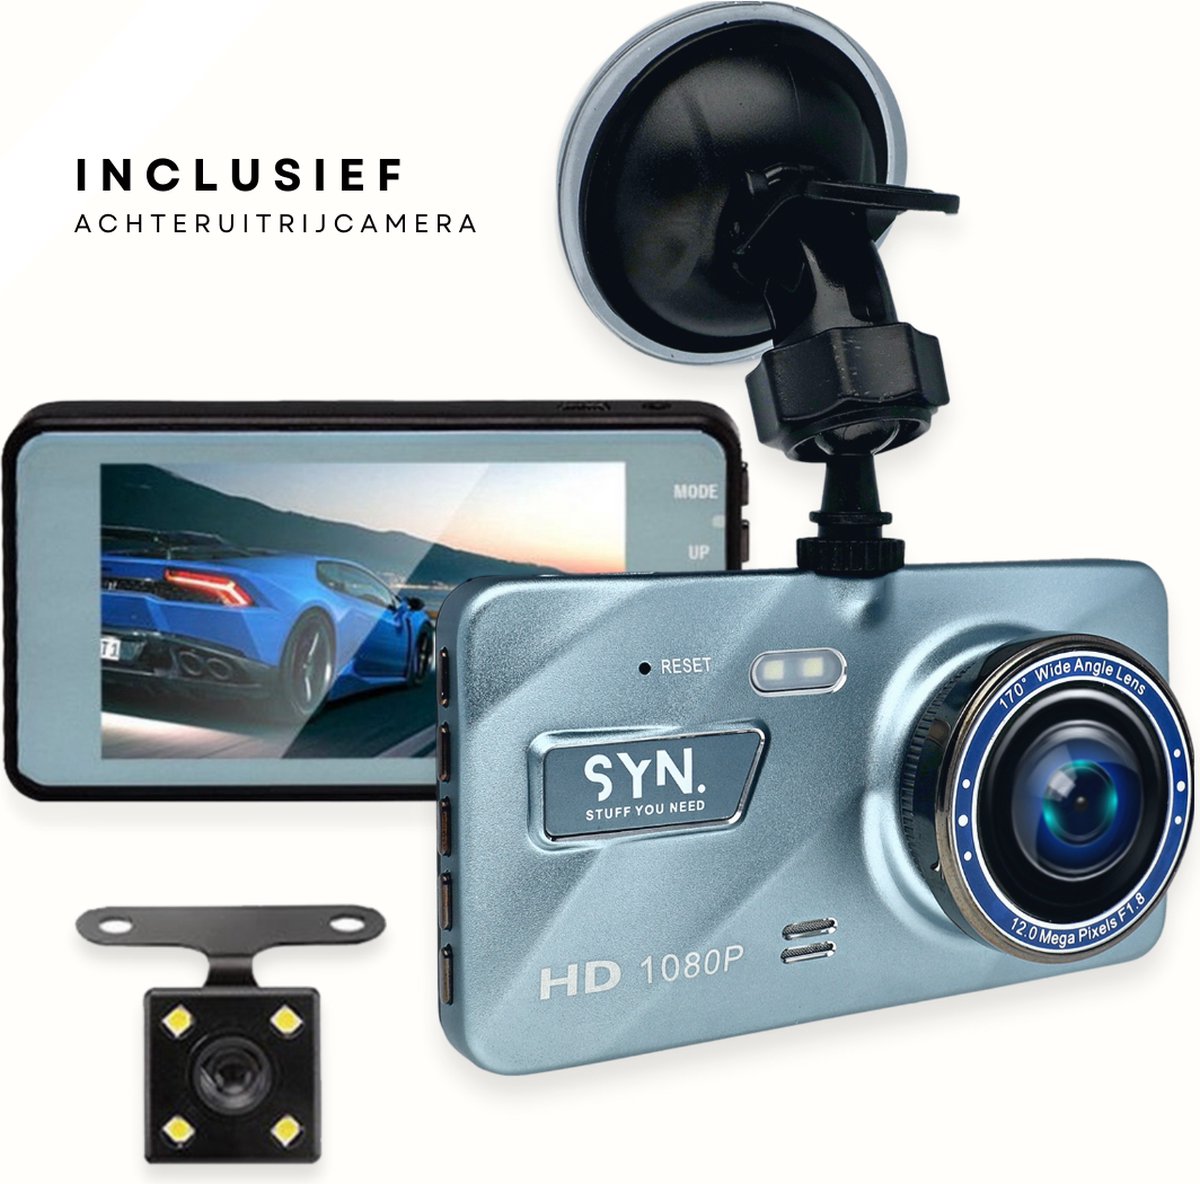 SYN Dashcam Voor Auto 1296P Full HD Dashboard Camera met G-Sensor - 170° Wijdhoeklens - 4.0 inch LCD Scherm - 24 uur Parkeerstand met Bewegingsdetectie - Loop Recording - Super Nachtzicht - Support 32G Max Micro sd voor Ongeval Record - Reisvideo